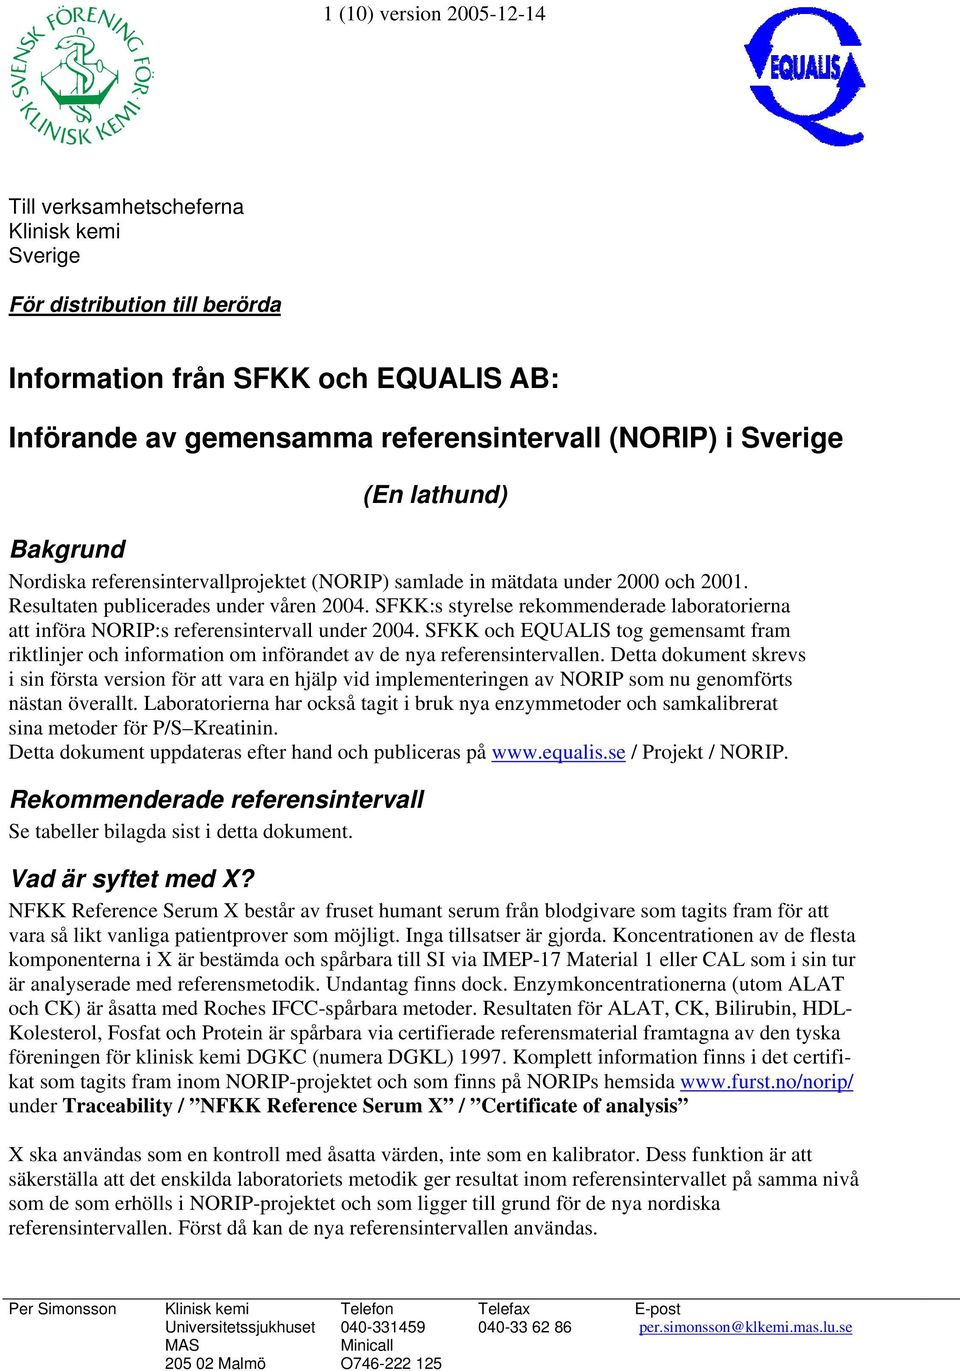 SFKK:s styrelse rekommenderade laboratorierna att införa NORIP:s referensintervall under 2004.